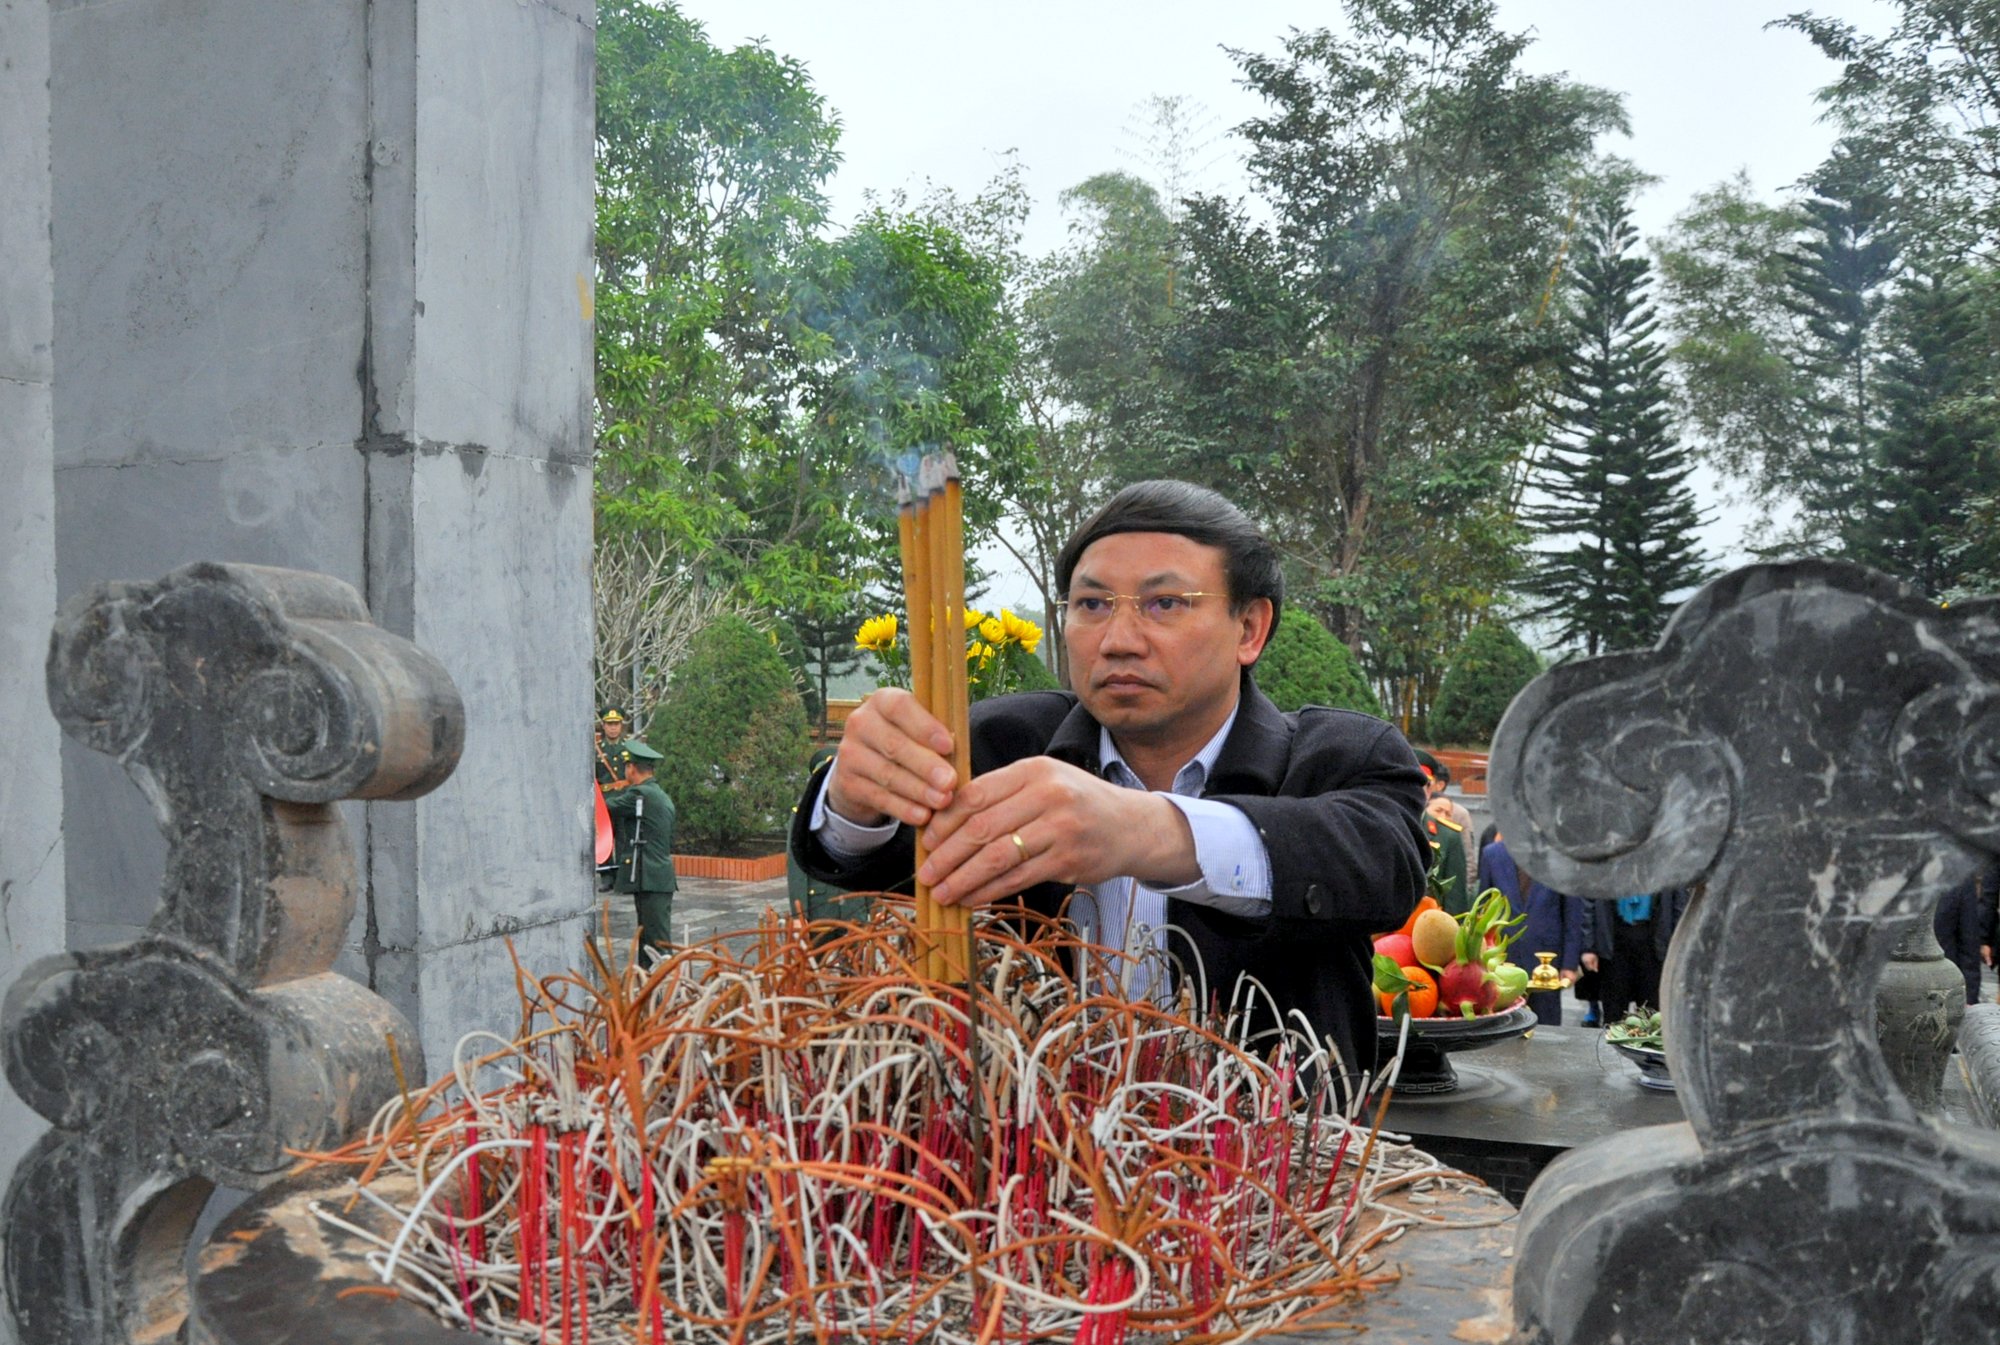 Đồng chí Nguyễn Xuân Ký, Bí thư Tỉnh ủy, Chủ tịch HĐND tỉnh cùng đoàn đặt vòng hoa, dâng hương tại Đài Tưởng niệm Pò Hèn.